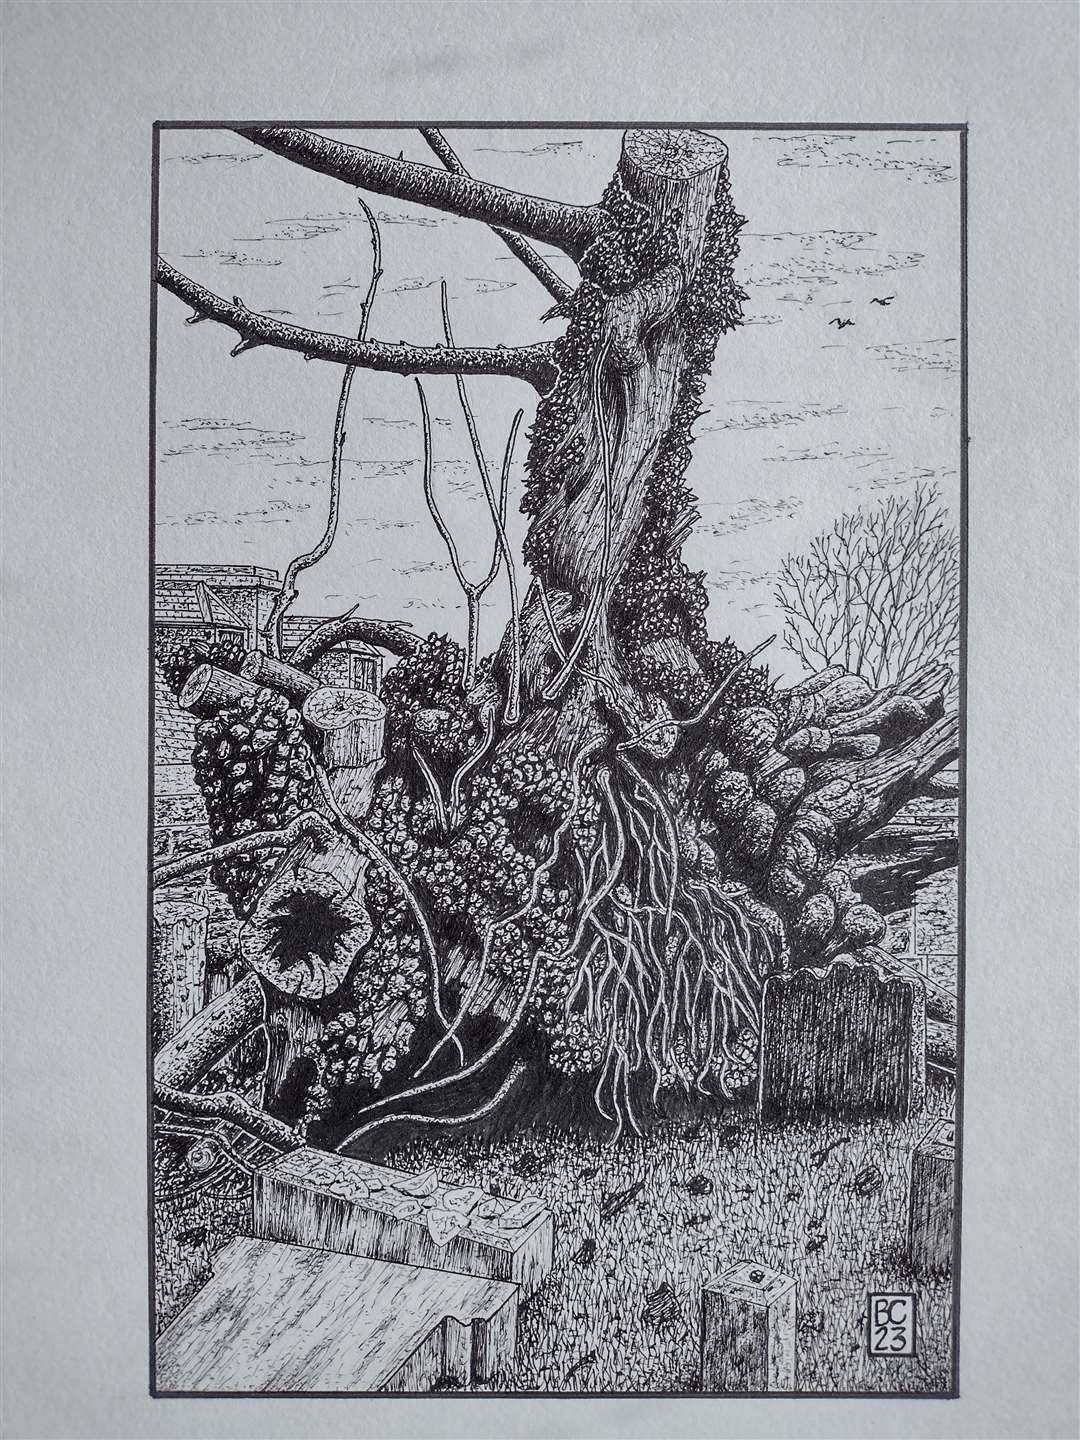 An illustration of the Beauly elm by artist Bernard Carter.